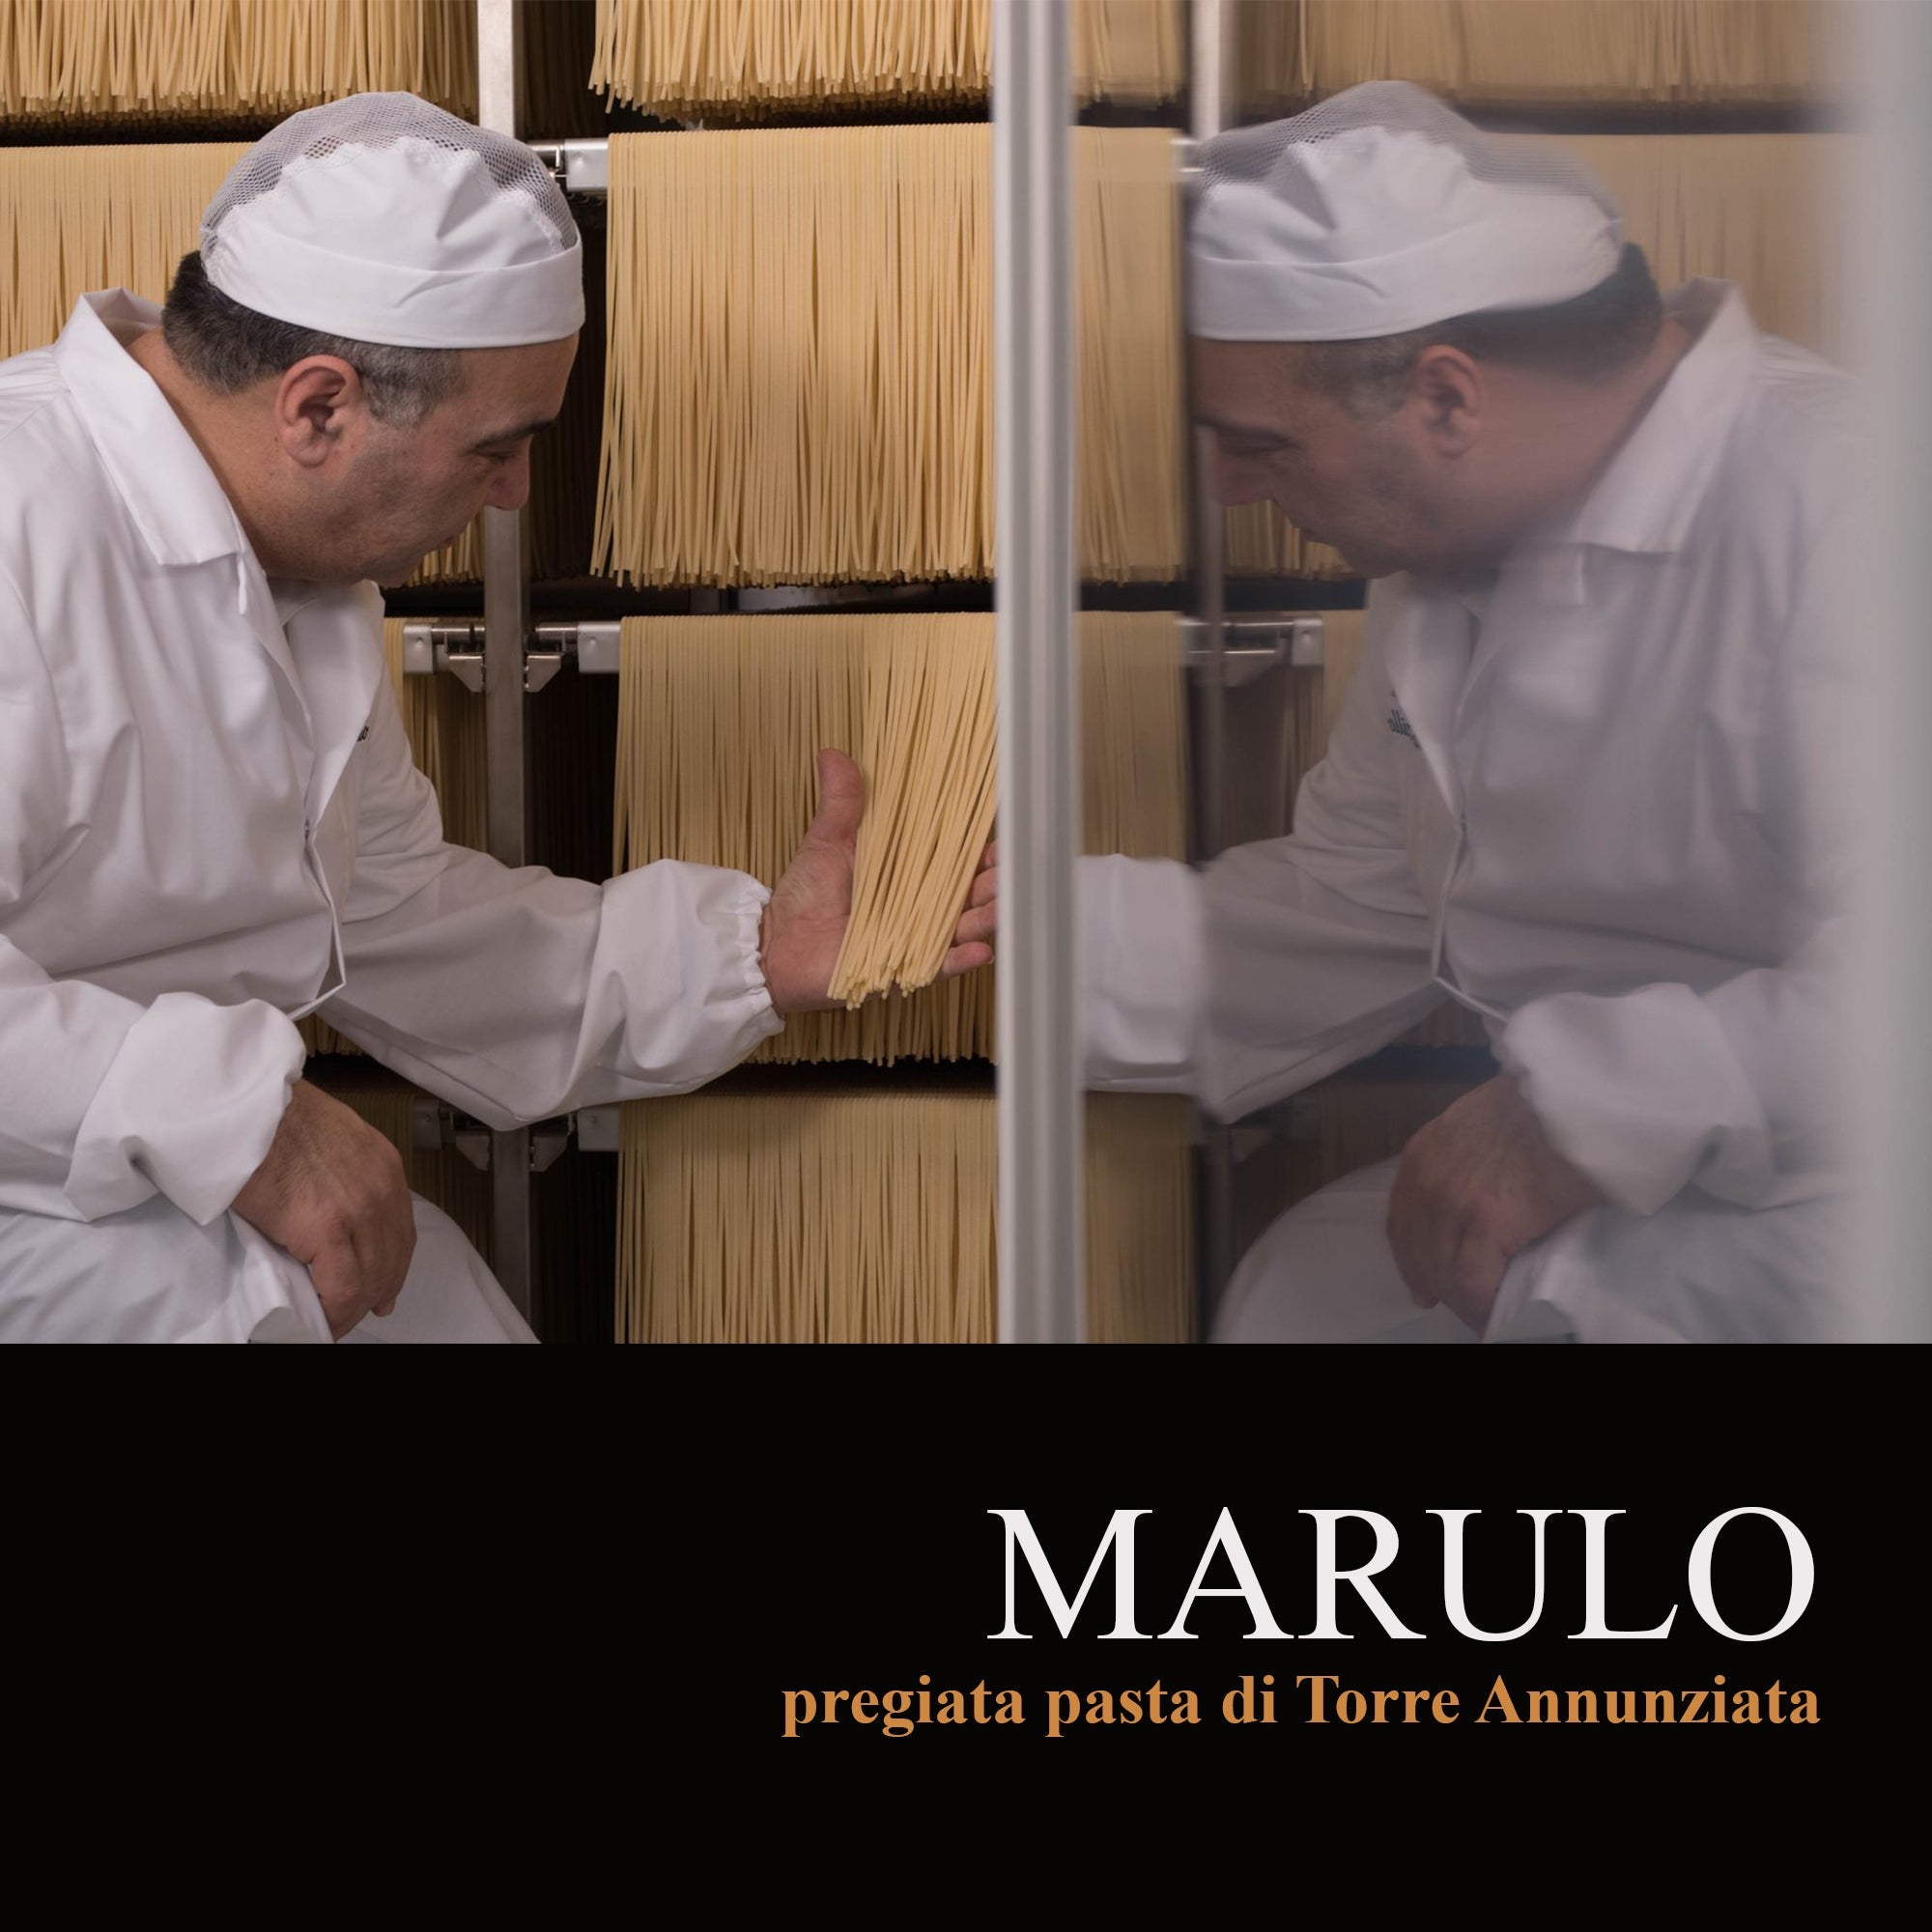 Marulo Artisan Pasta Bucatini | Homemade Italian Pasta |  Artisan Pasta  | WholesaleItalianFood.com